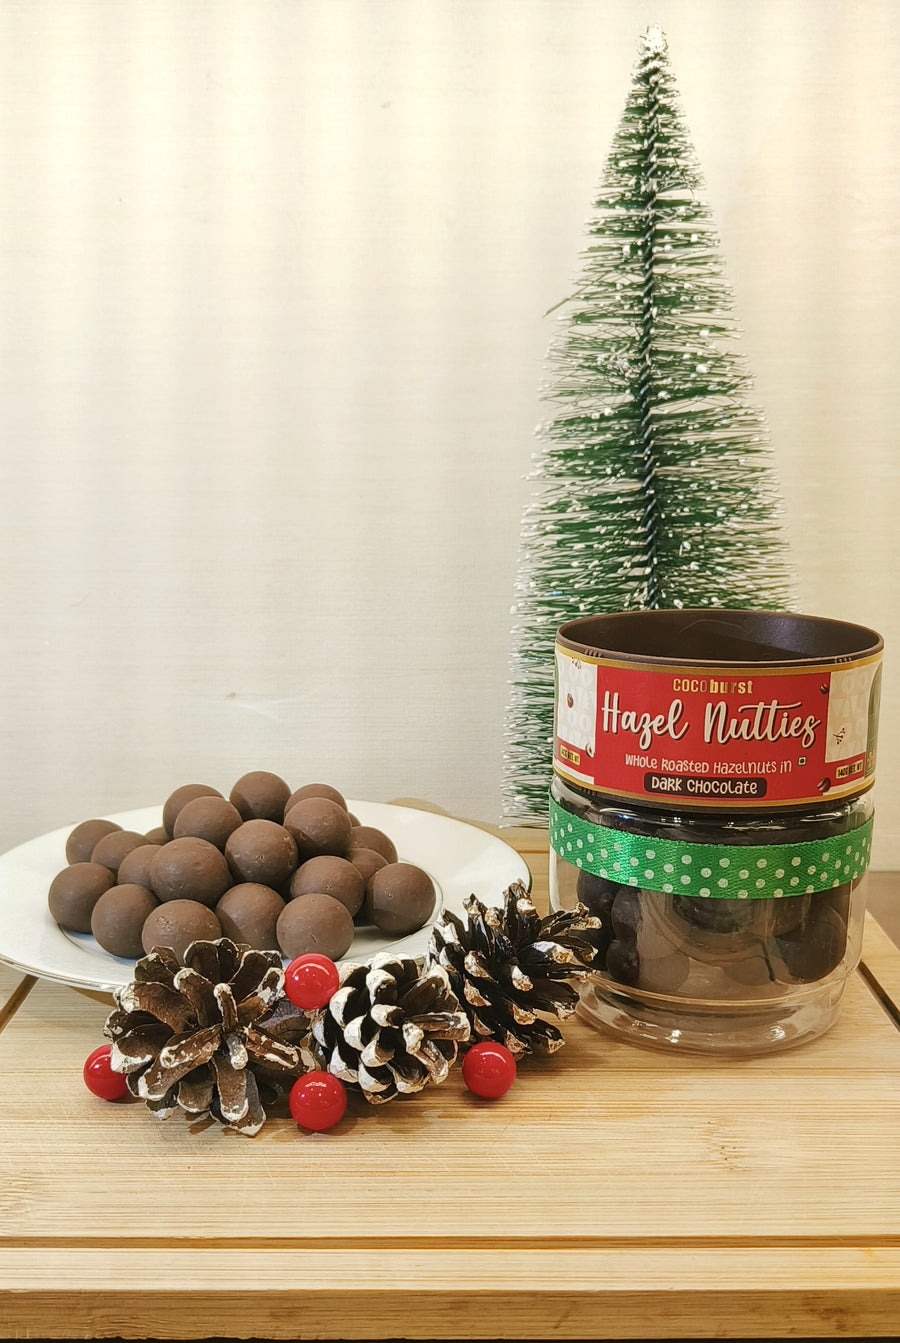 Hazel Nutties - Whole Roasted Hazelnuts In Dark Chocolate